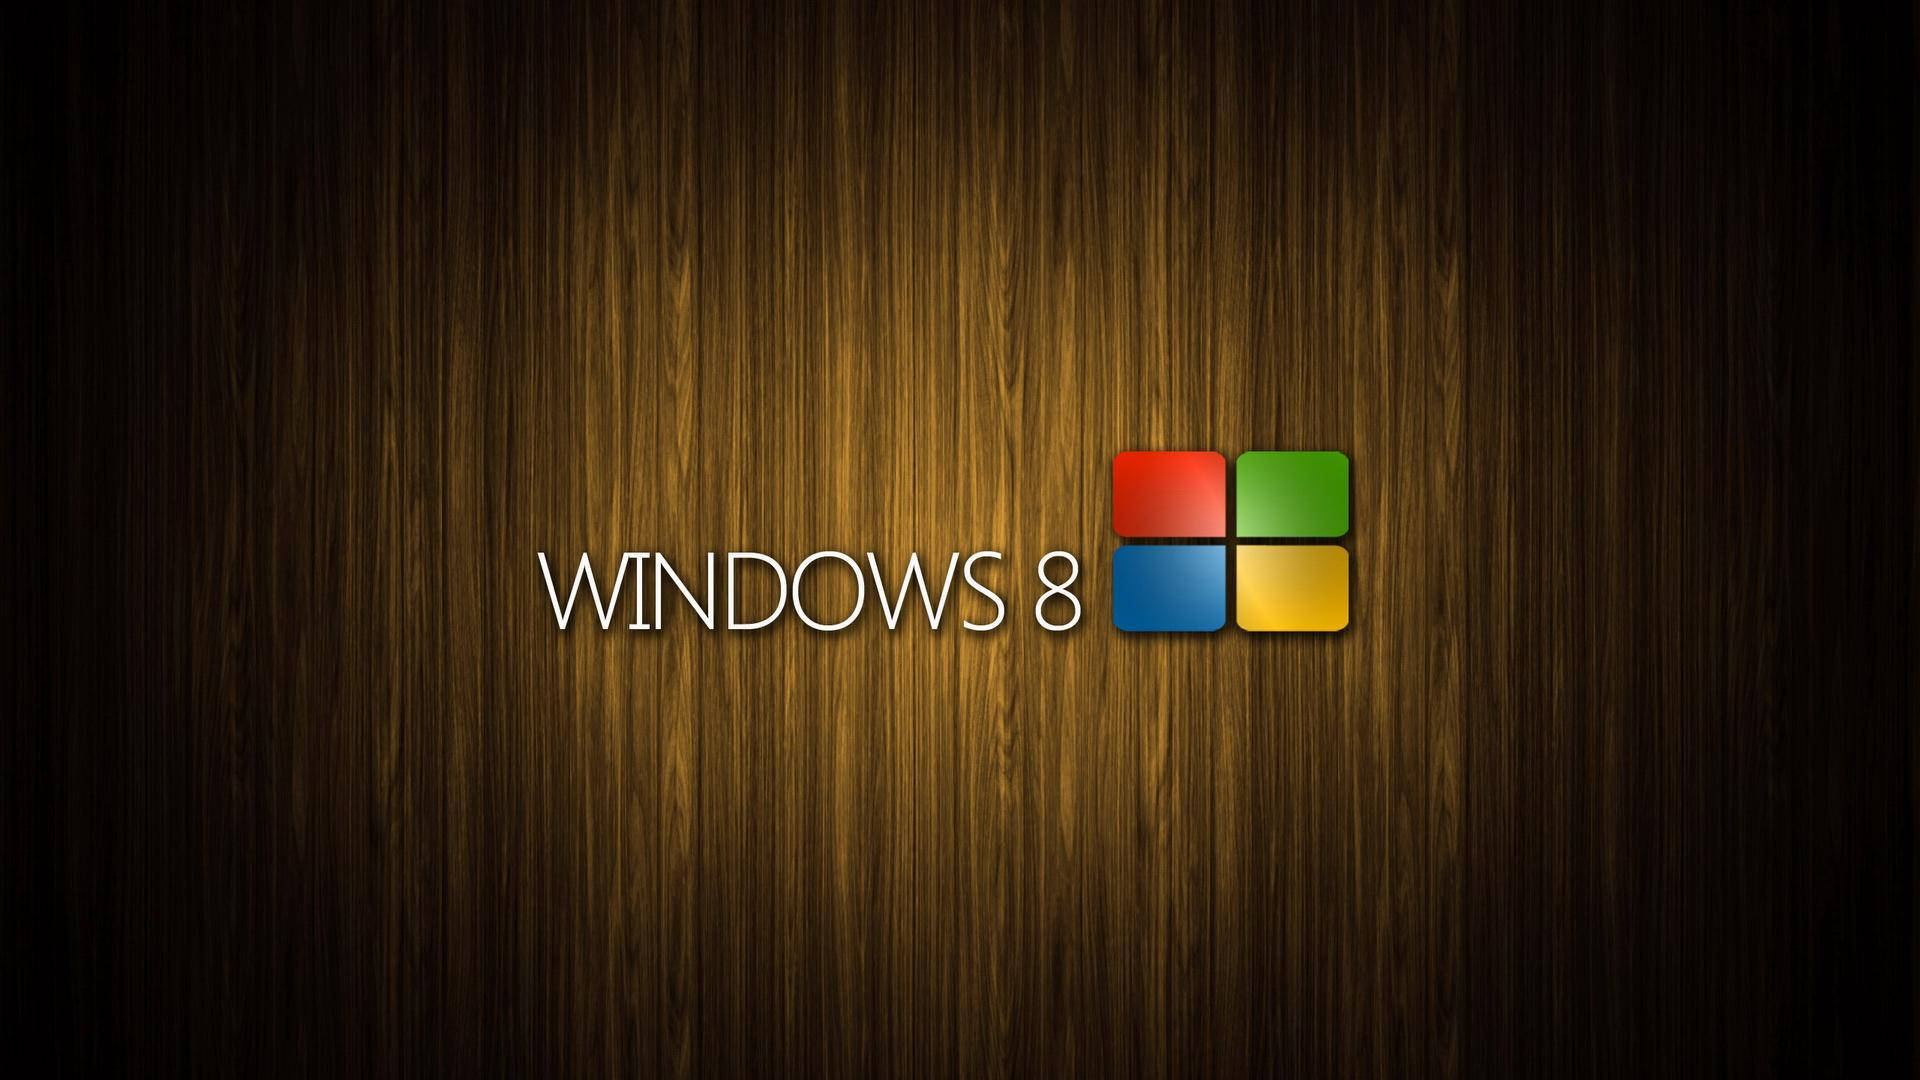 Sfondodi Legno Per Windows 8 Con Effetto Vignetta Sfondo